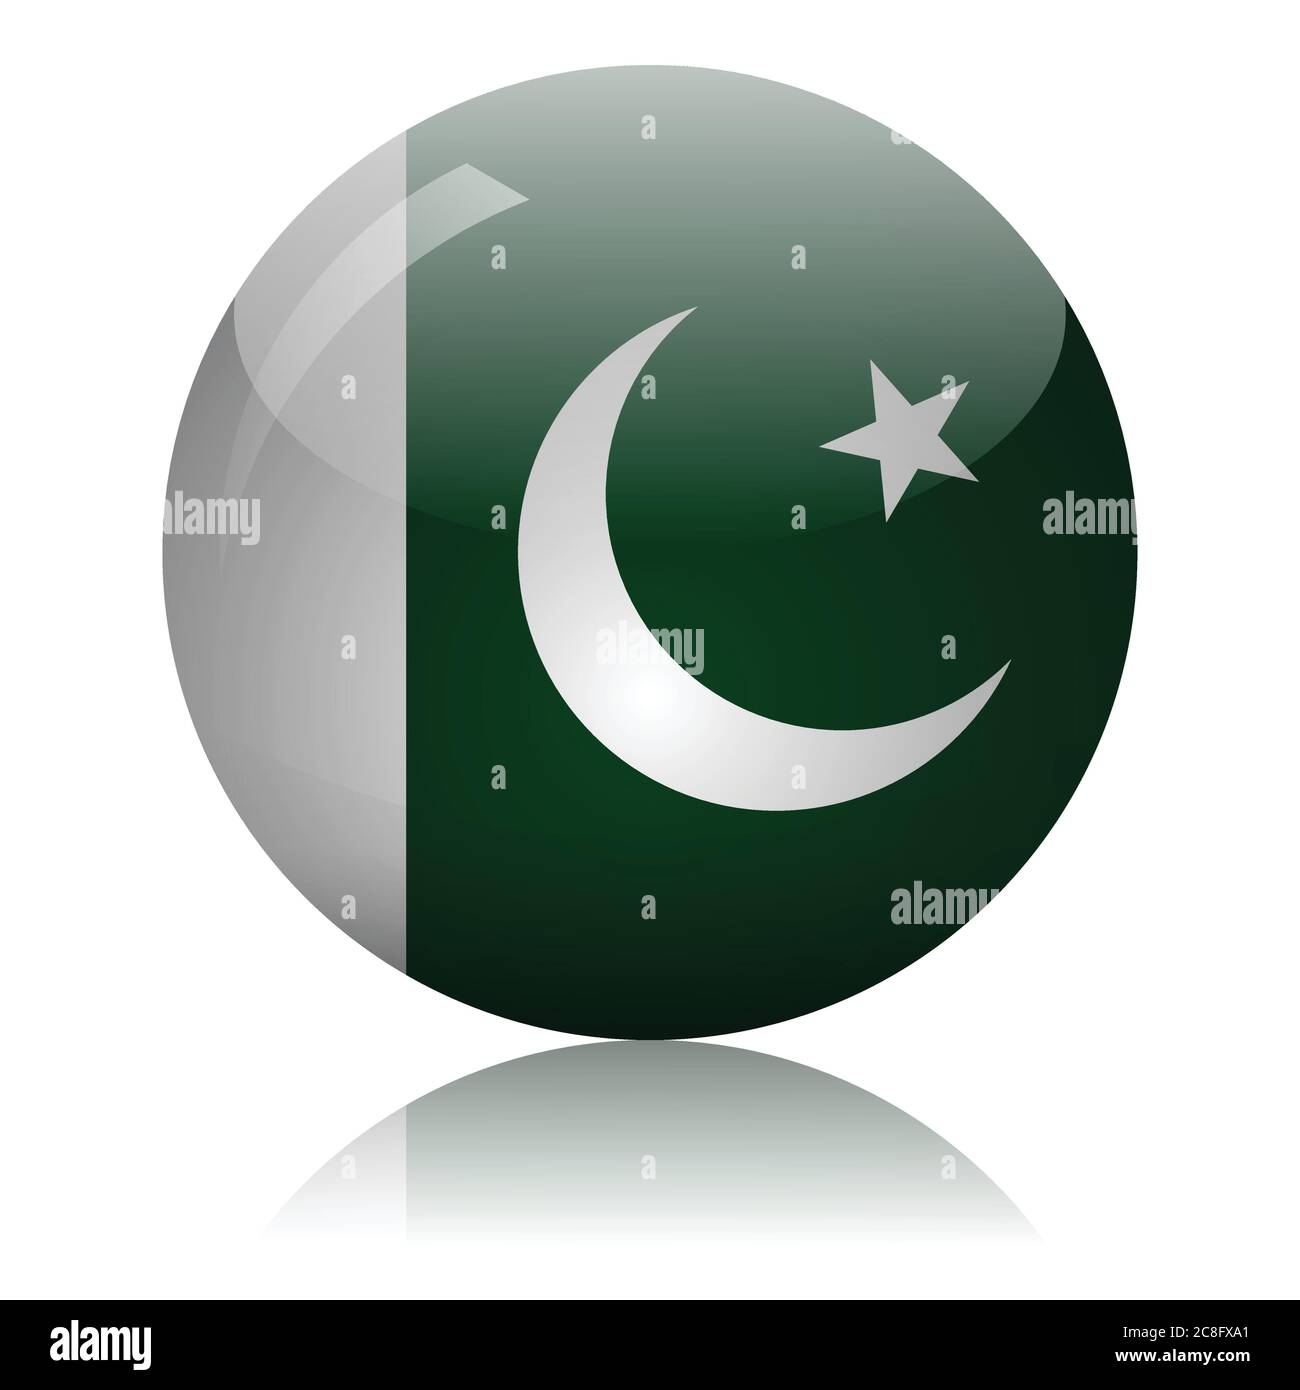 Pakistani flag glass ball on light mirror surface vector illustration Stock Vector